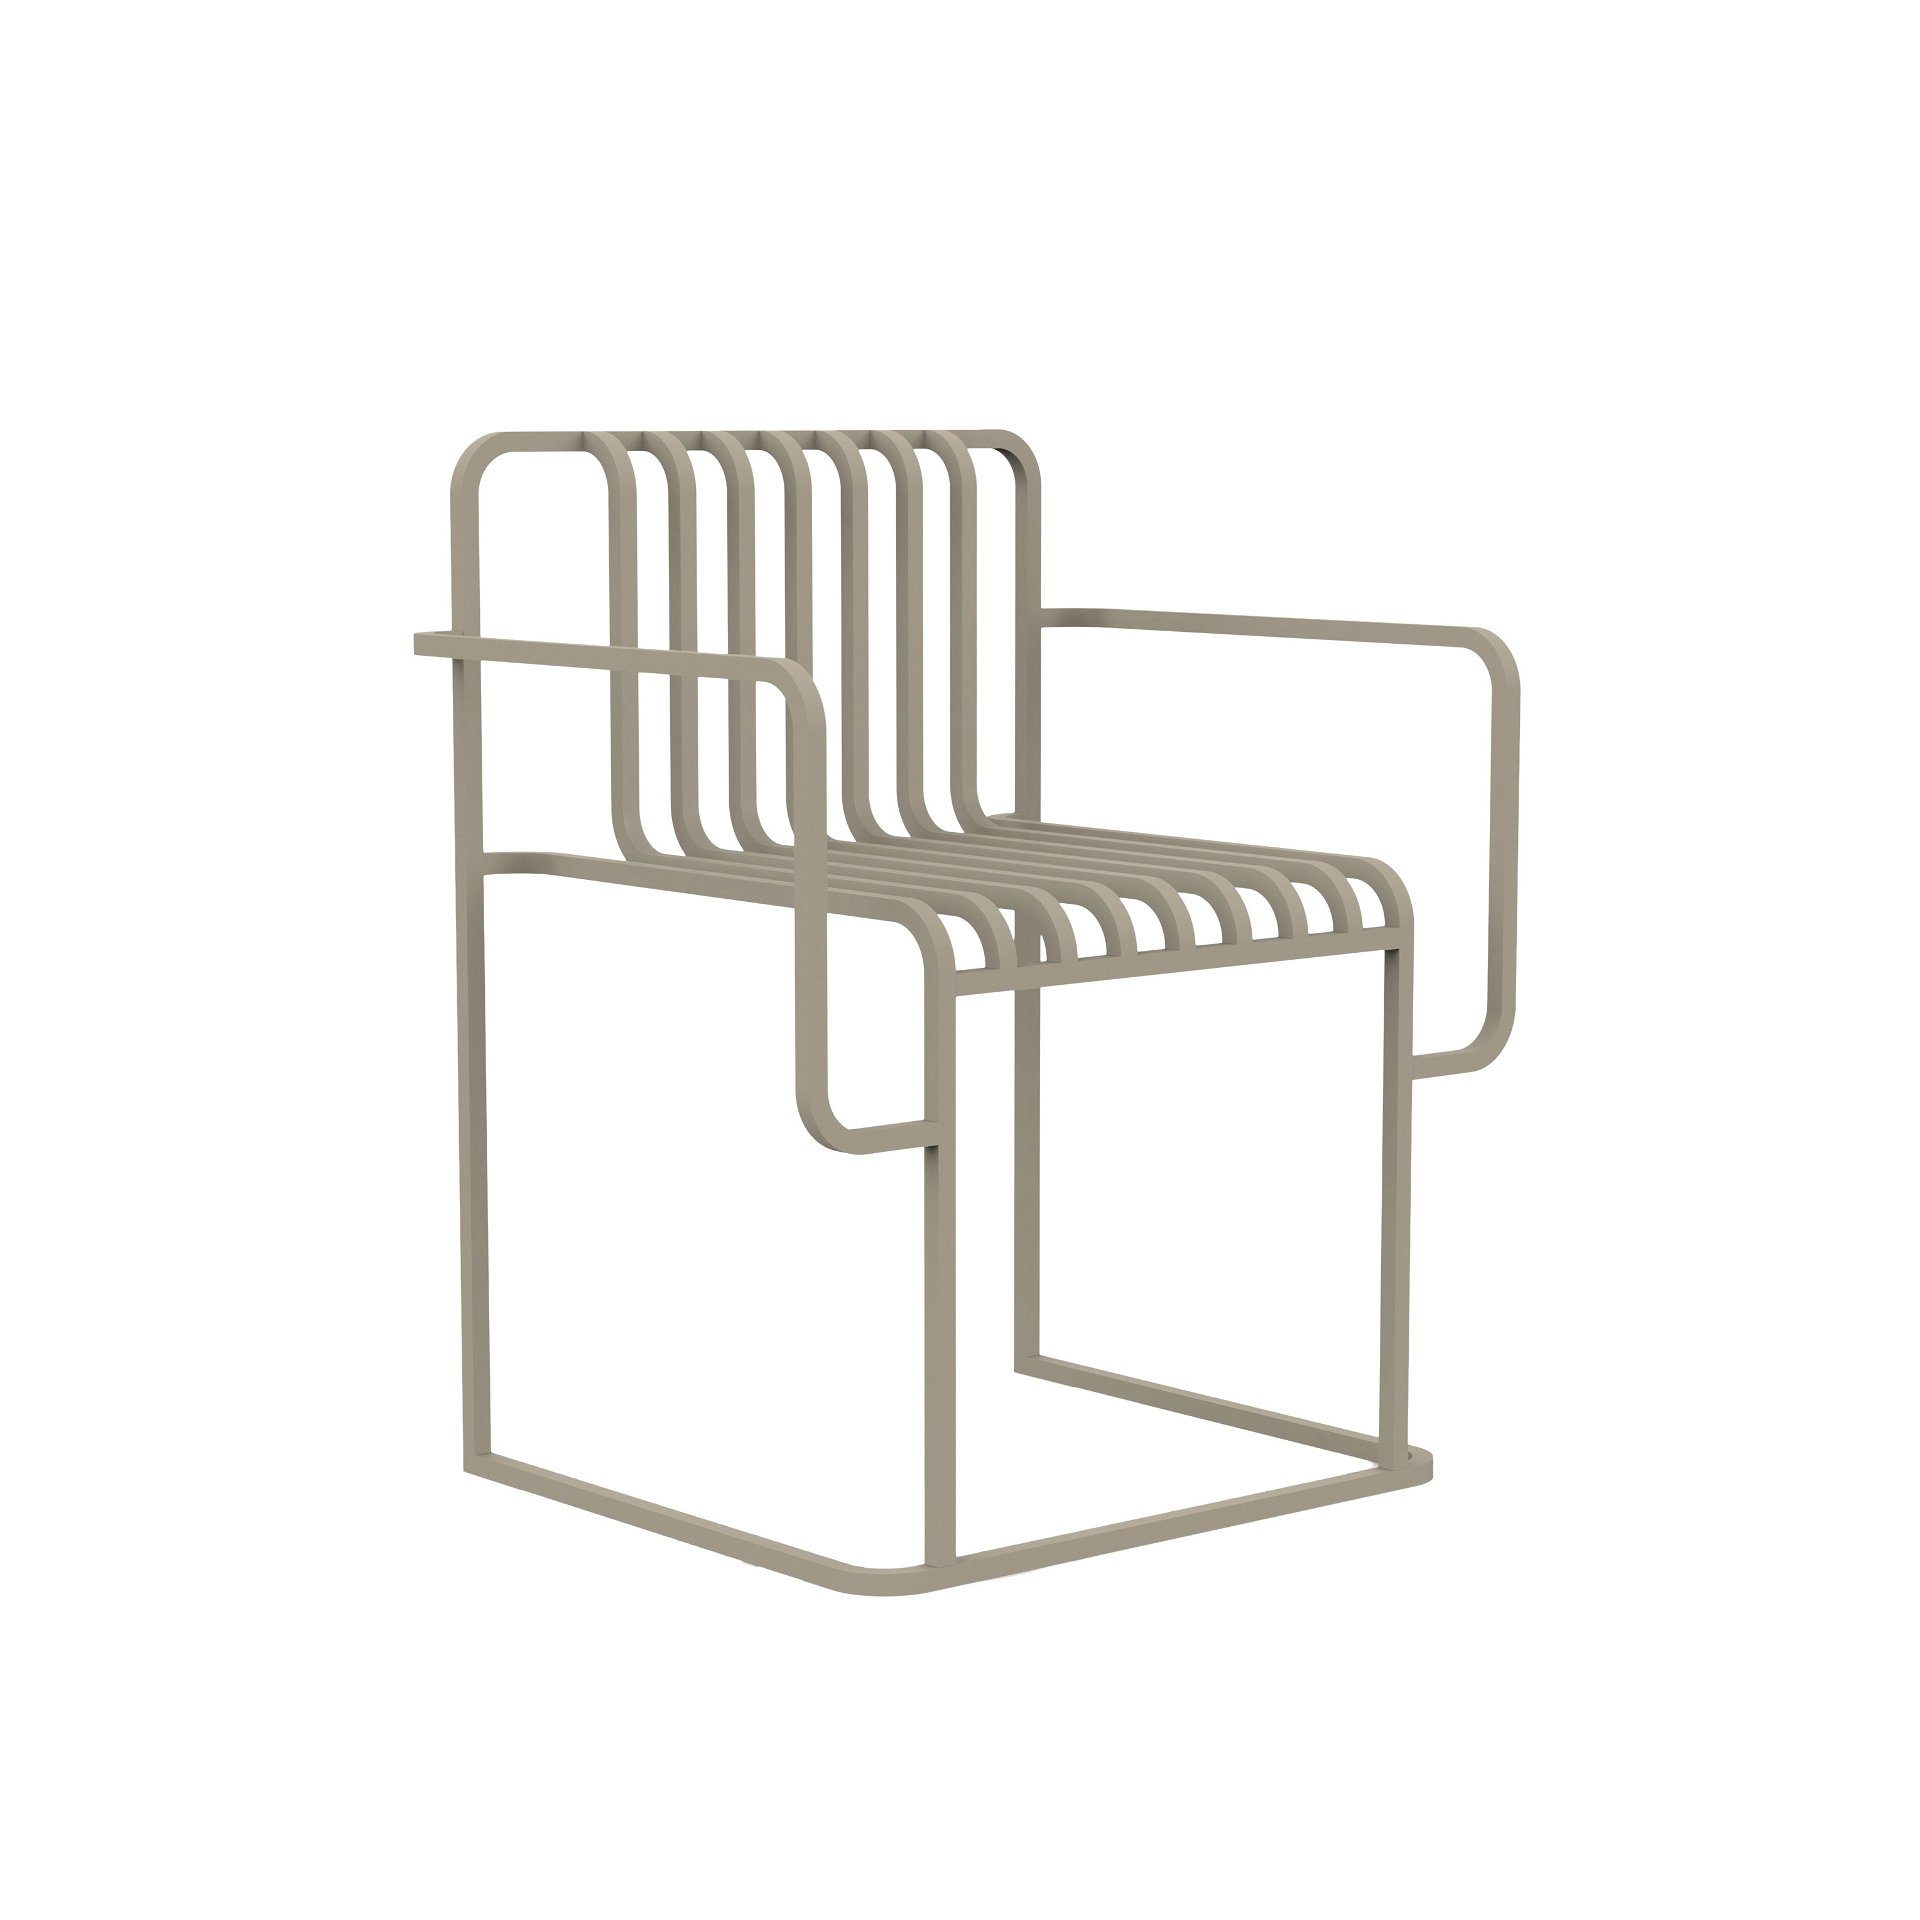 Draußen vor der Tür: Der »Grill Chair« von Diabla zitiert nicht nur im Namen einen Grillrost. Fazit: auf den Zeitgeist hingebogener, eleganter Minimalismus. mutdesign.com